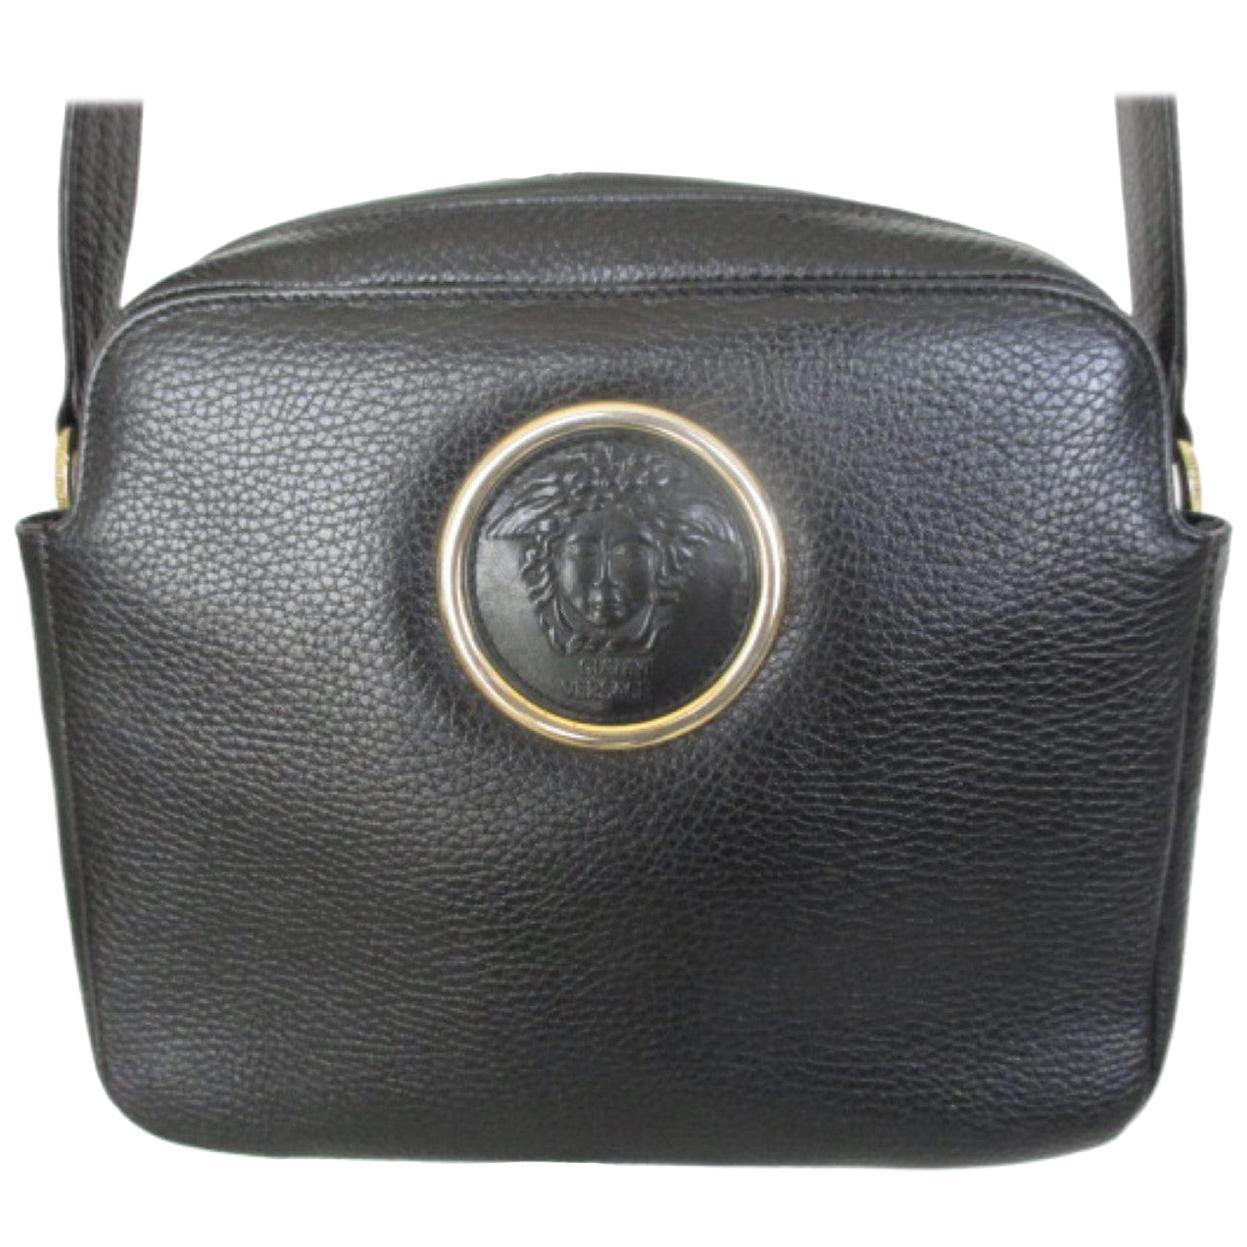 Buy Premium Versace Handbag for Women (LW117)